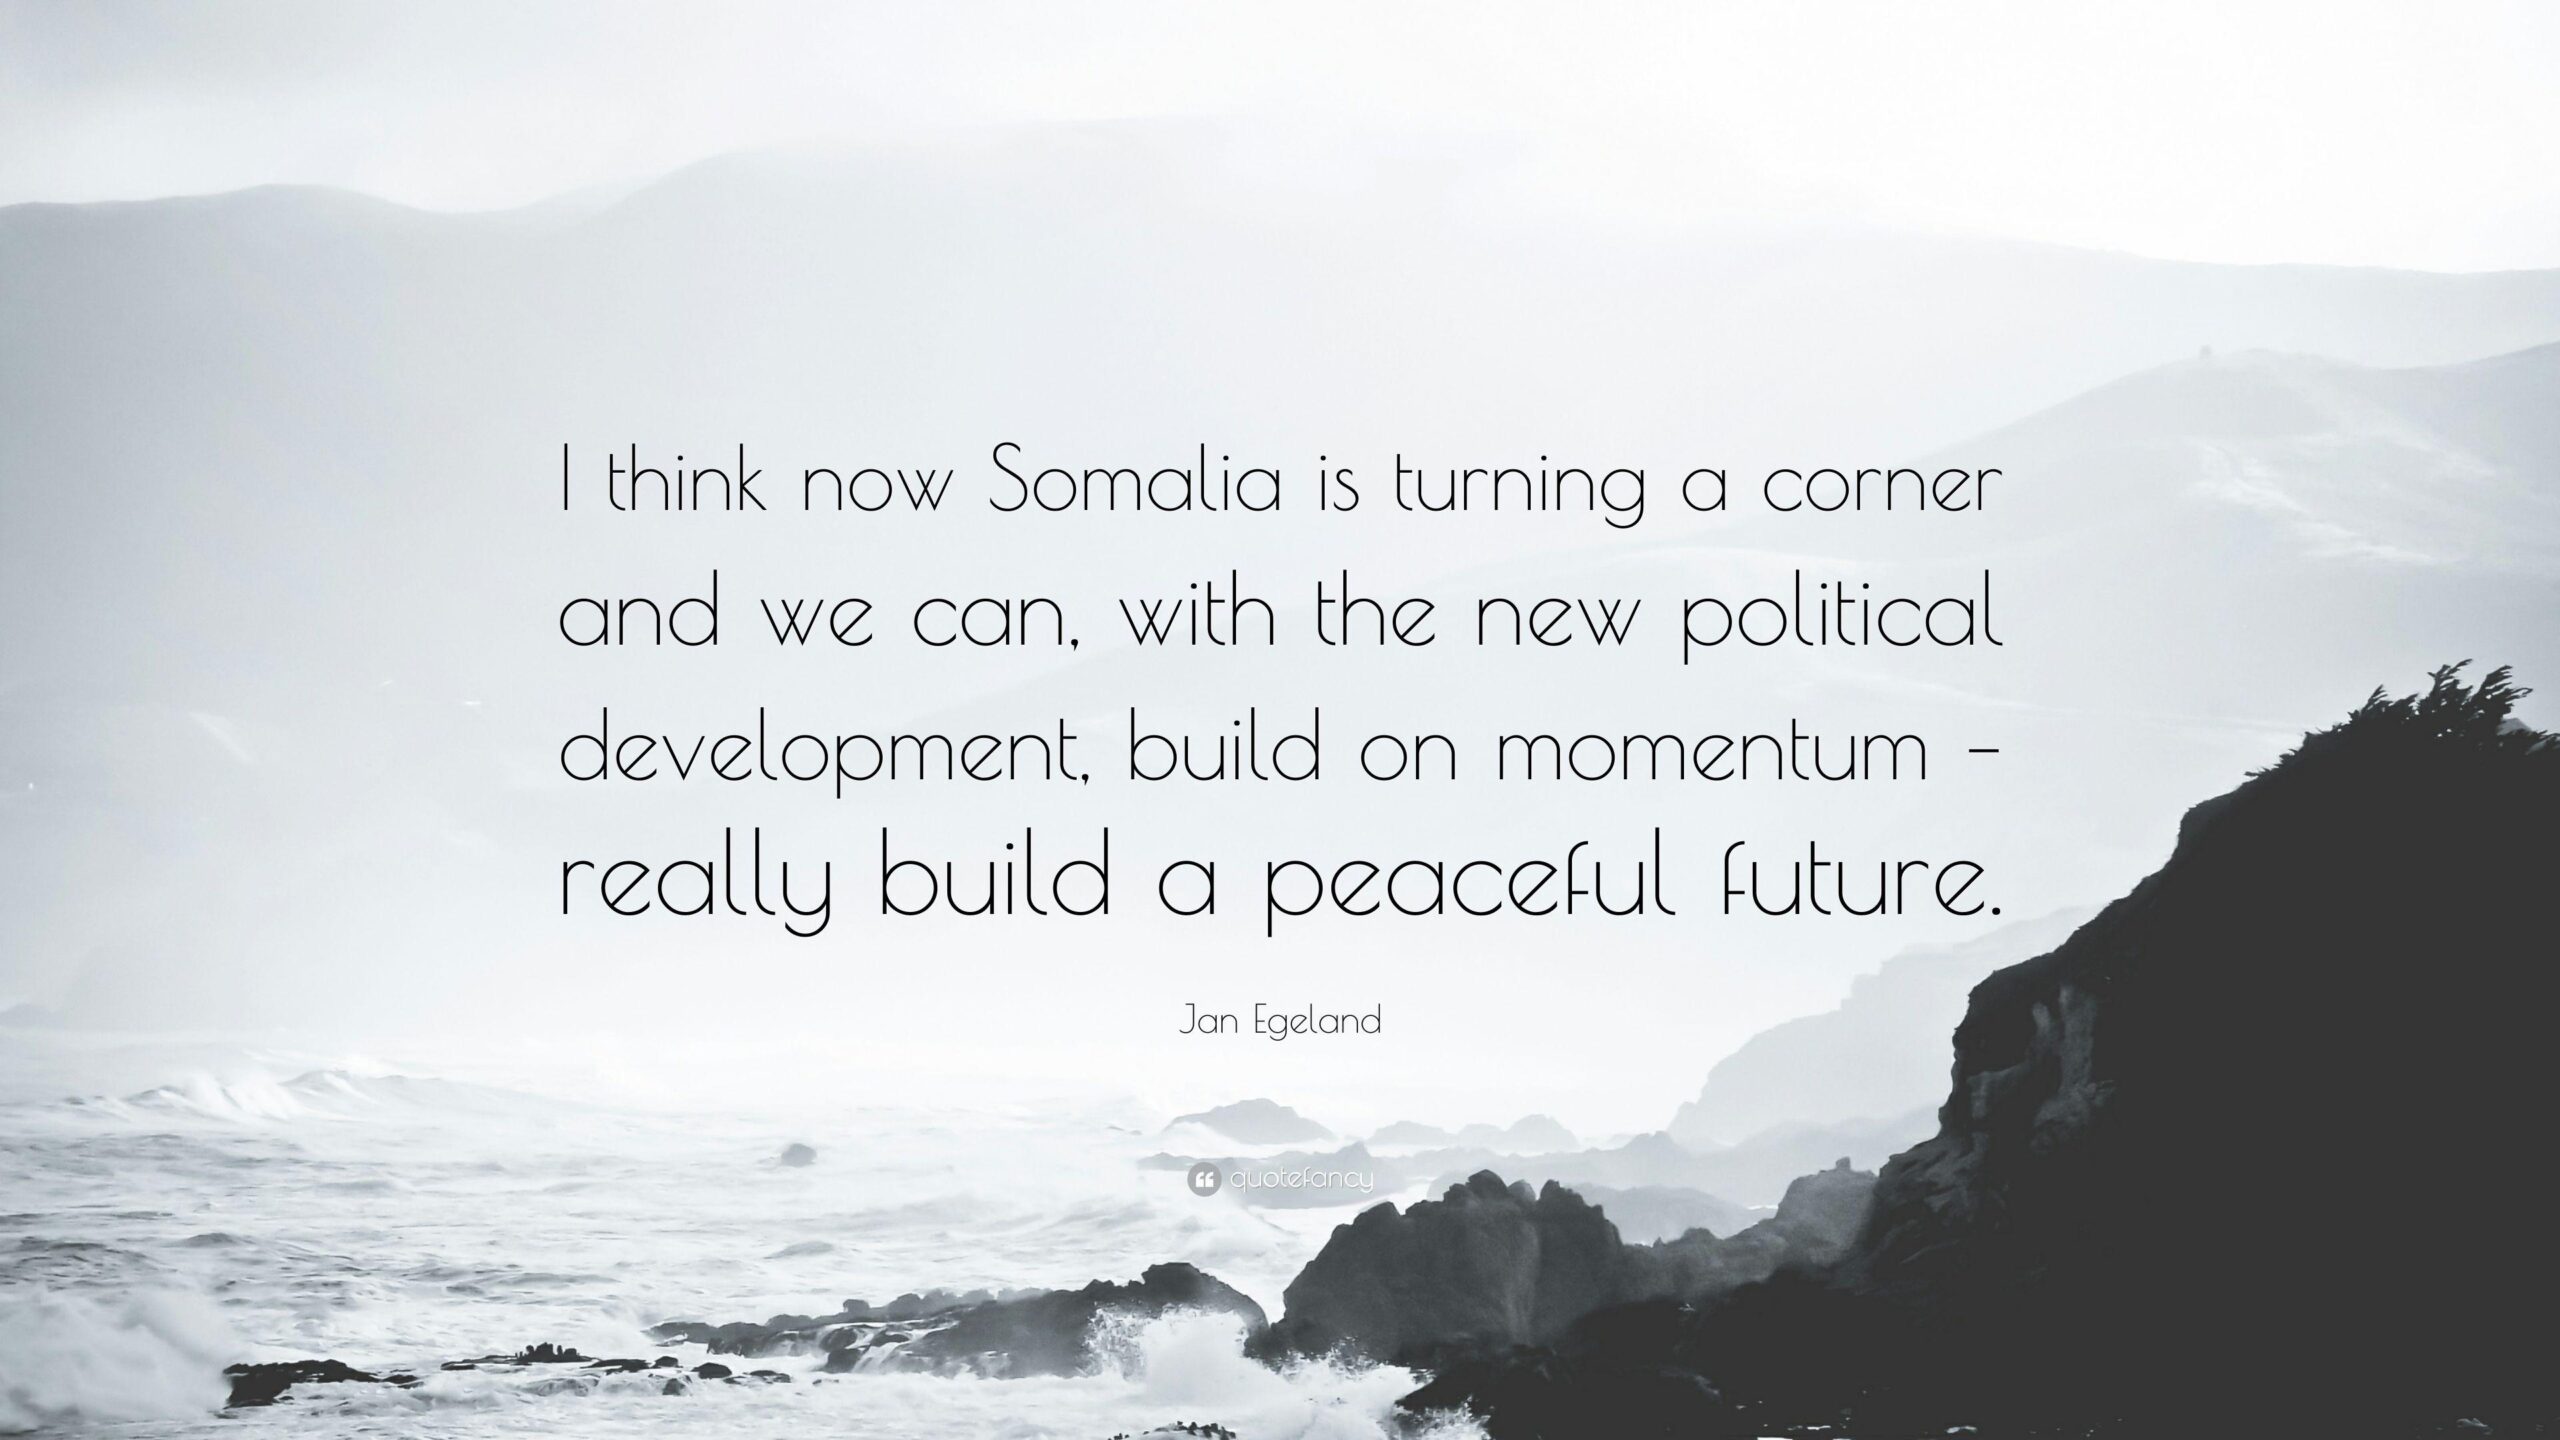 Jan Egeland Quote “I think now Somalia is turning a corner and we